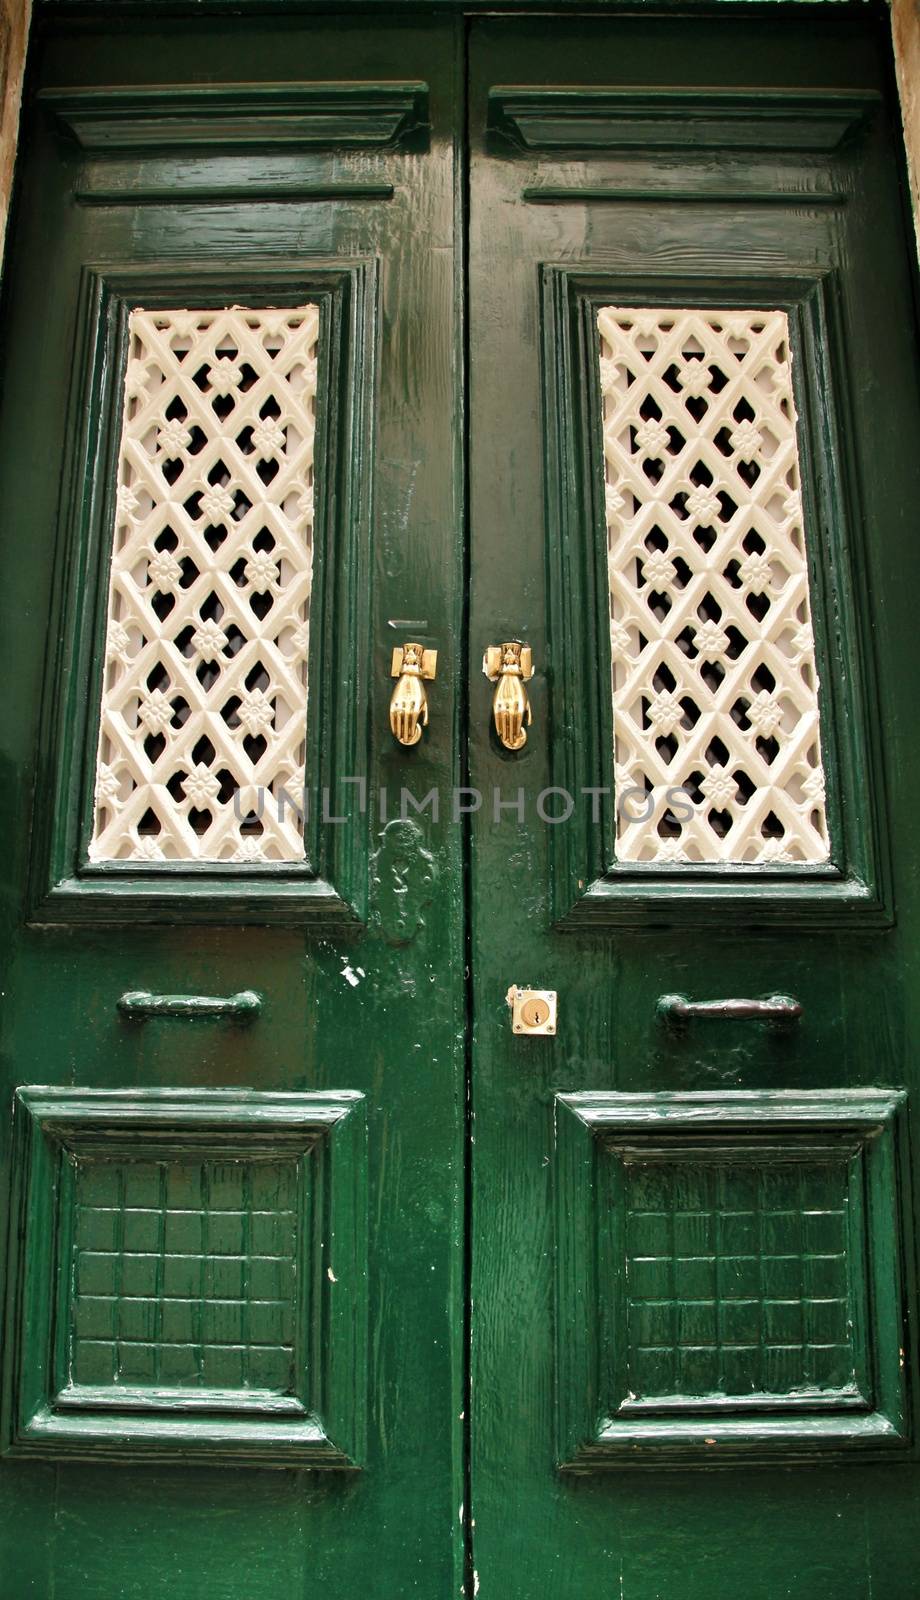 Door knockers with hand shape on green wooden door by soniabonet